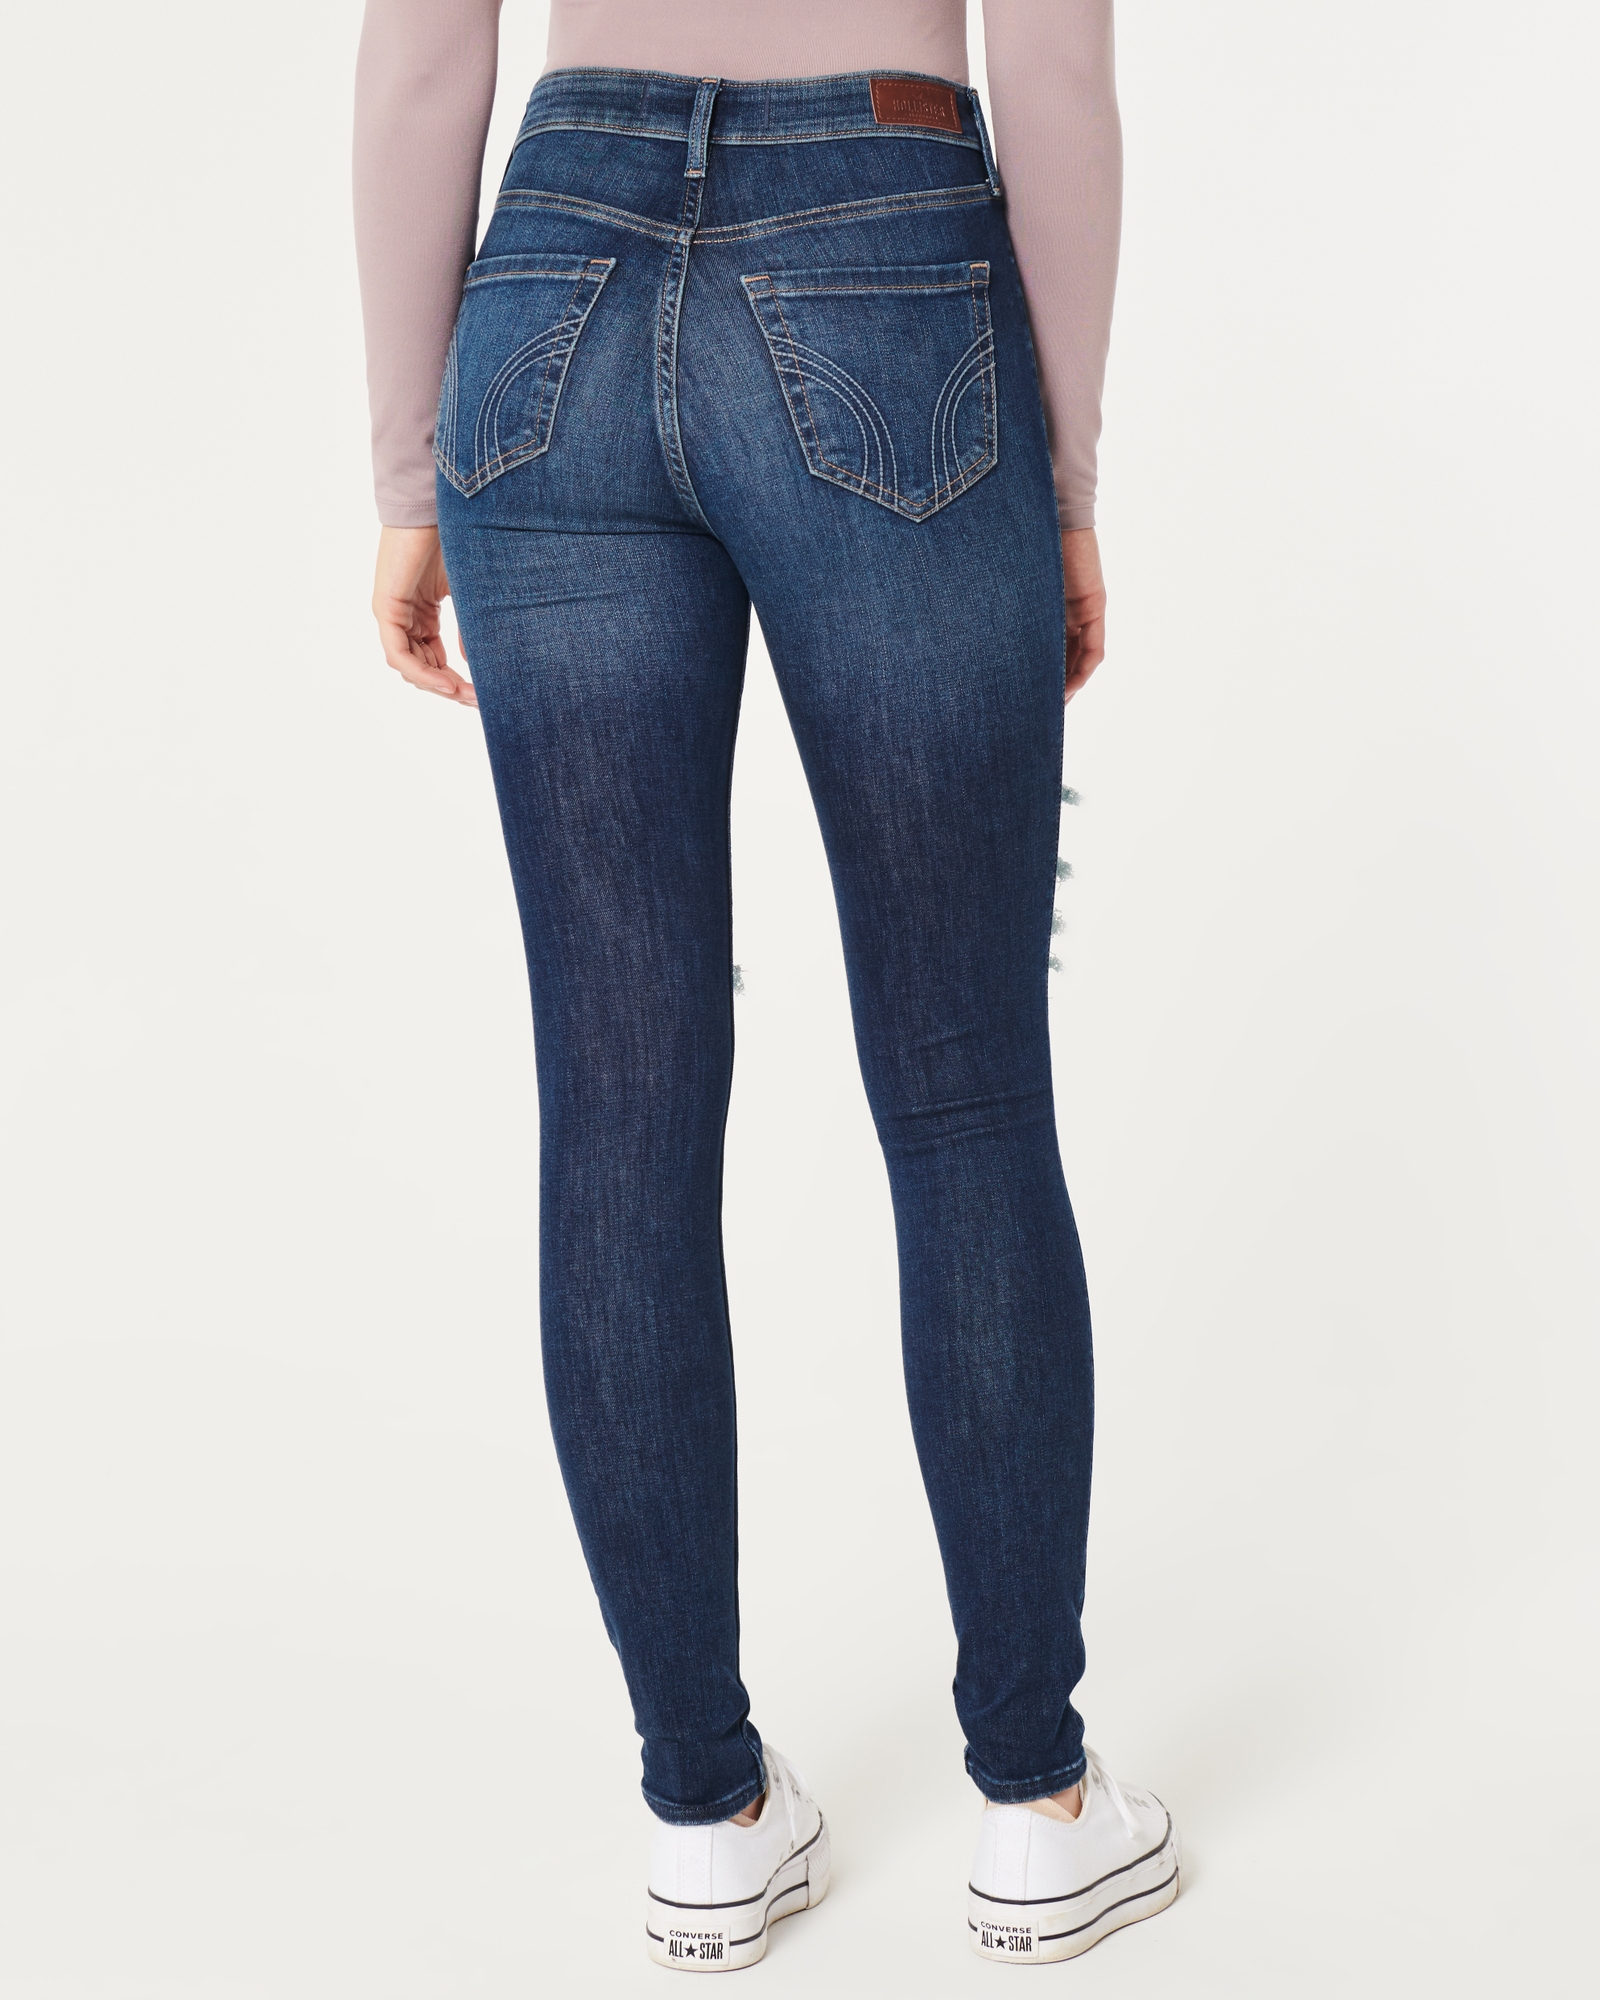 Express Blue Denim Super High Rise Mom Jeans Women's Size 00L